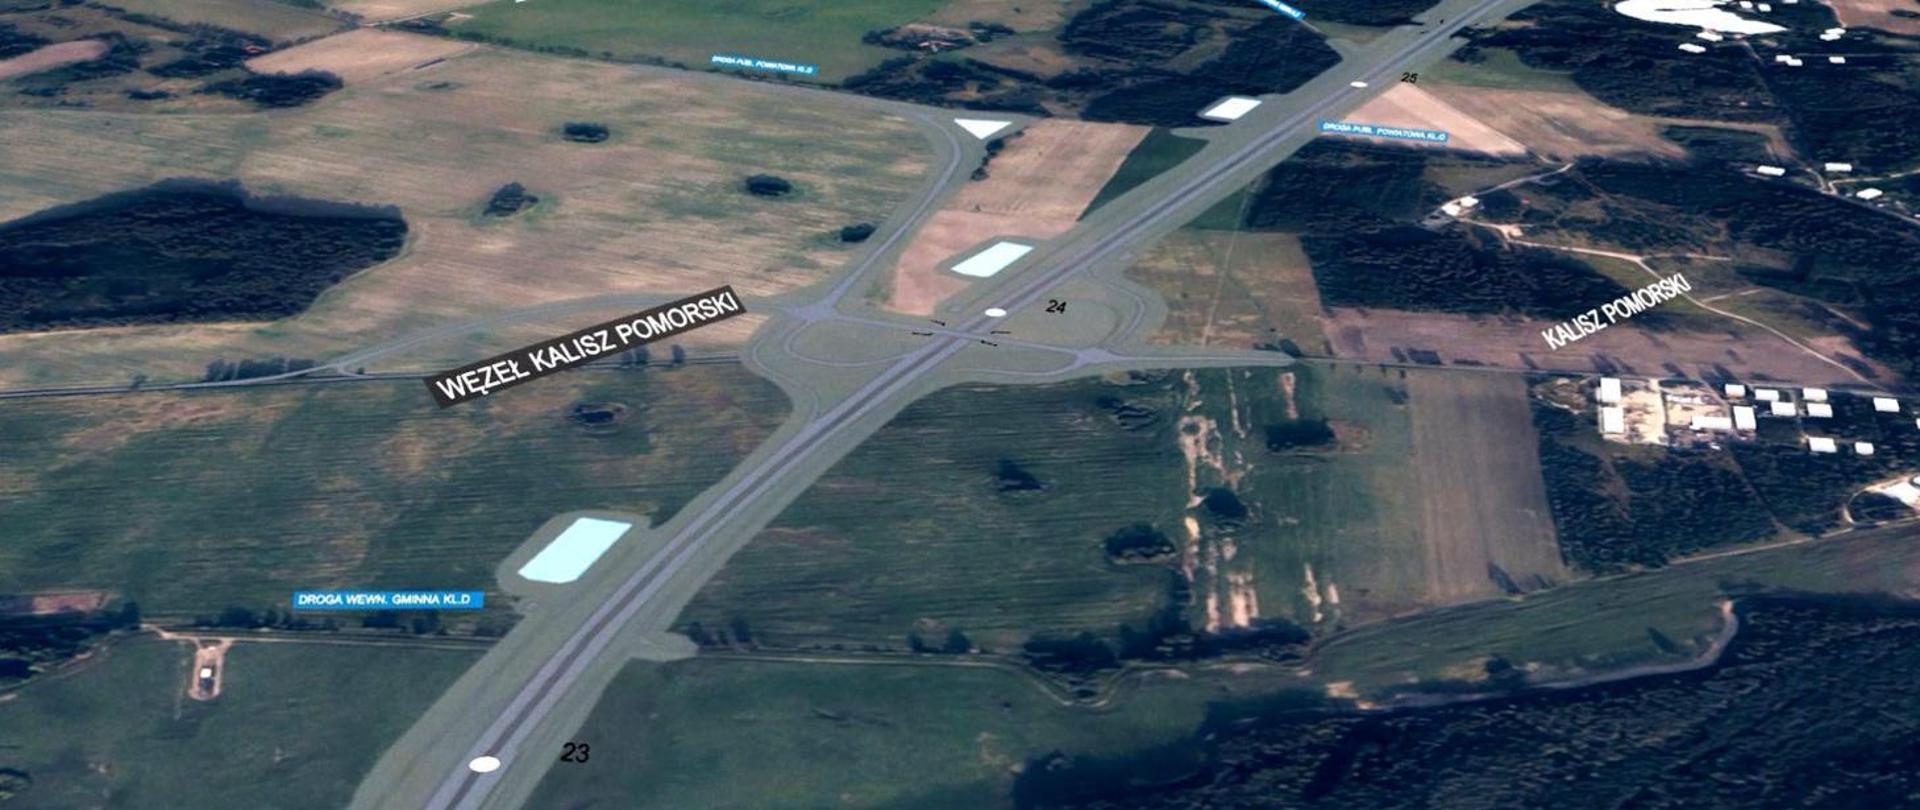 Wizualizacja przebiegu trasy S10 naniesiona na zdjęcie lotnicze okolic Kalisza Pomorskiego.